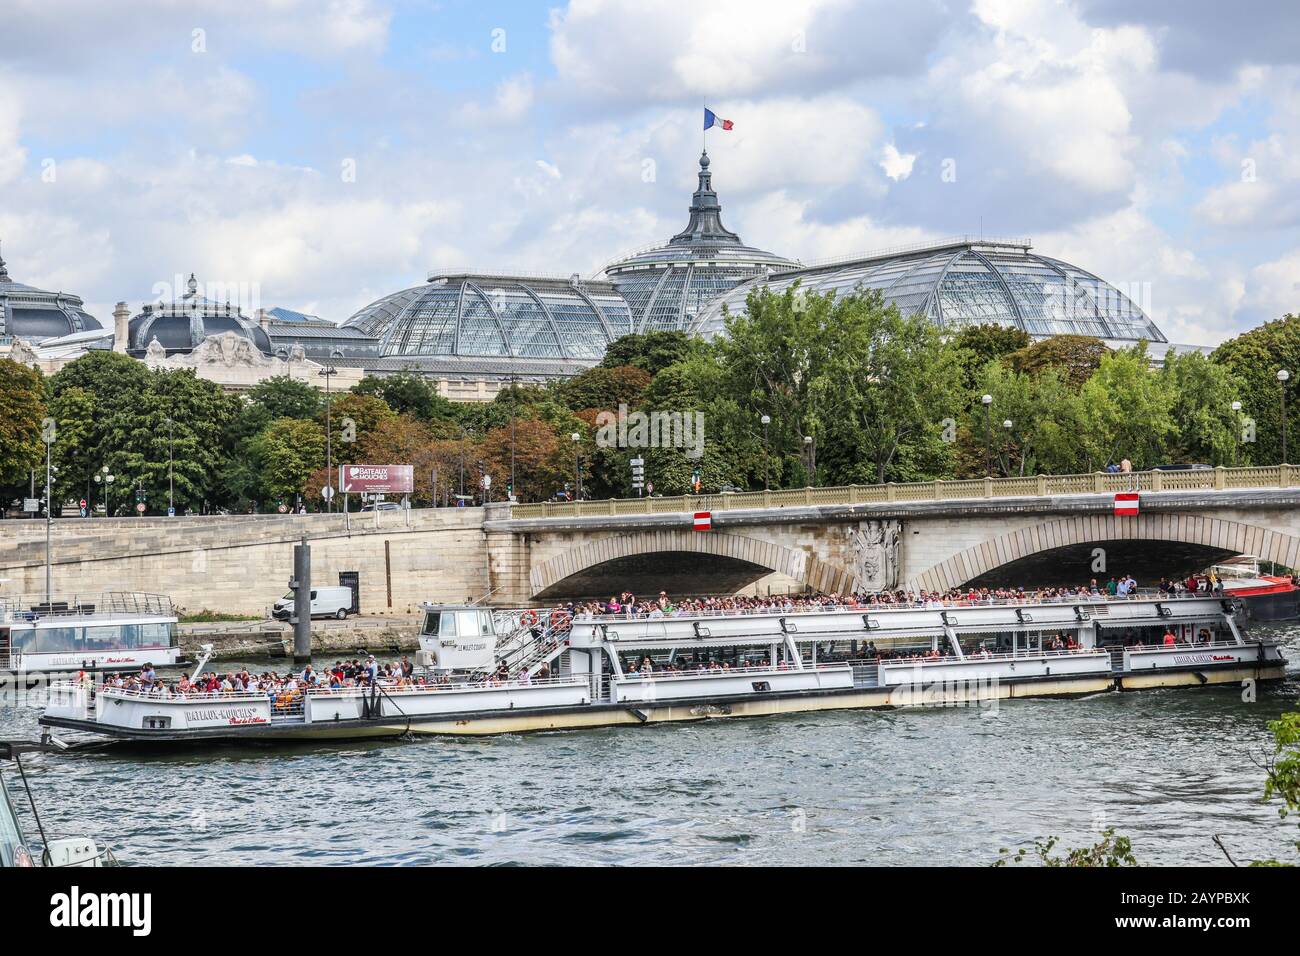 Crucero por el río en barco turístico en París, Francia, Europa Foto de stock